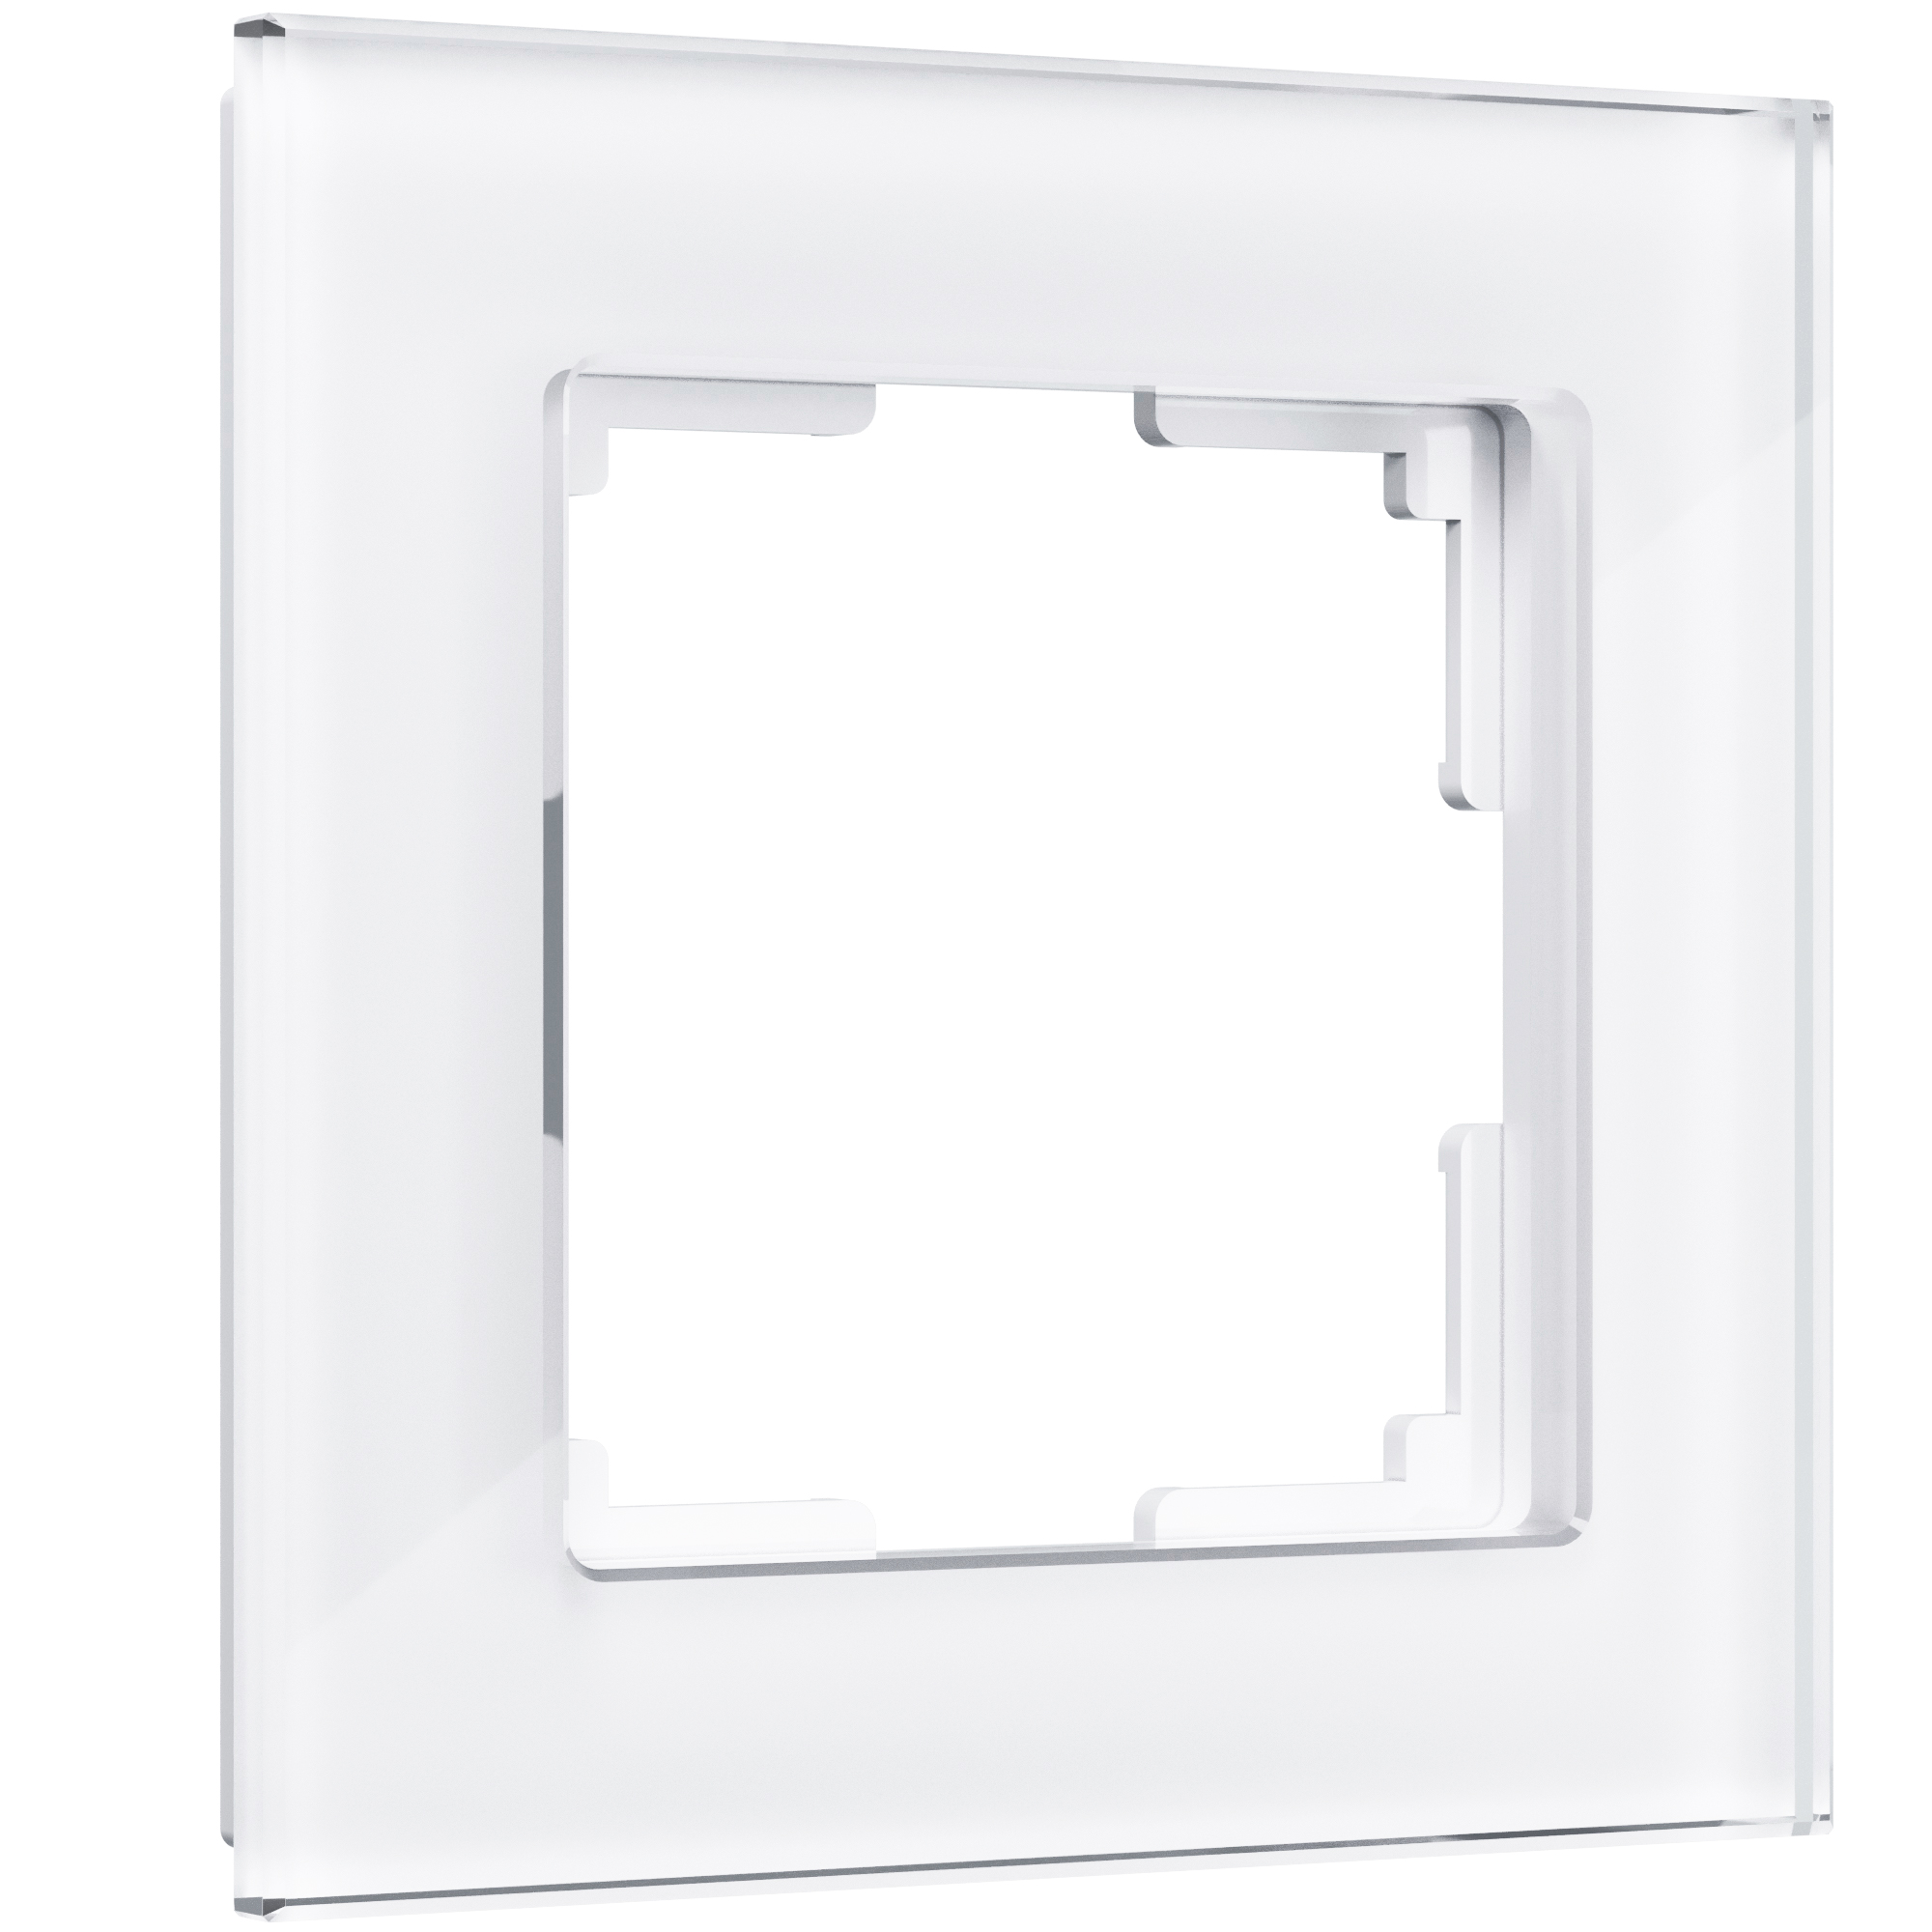 Рамка для розетки / выключателя на 1 пост Werkel W0011101 Favorit белый стекло